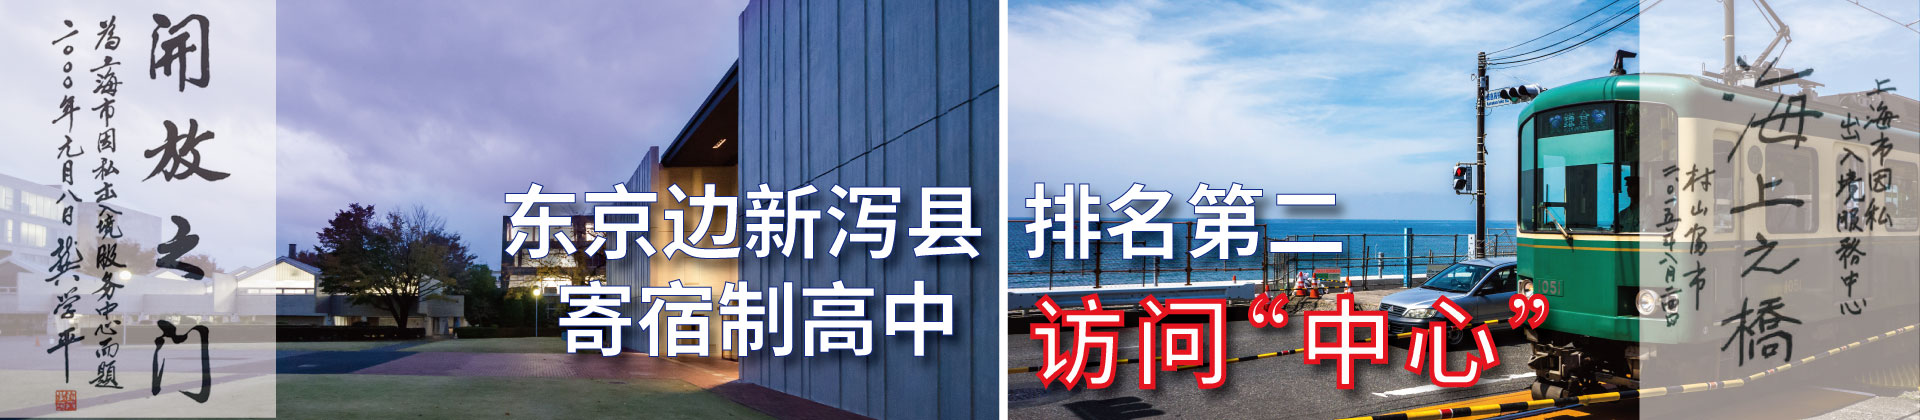 东京边新泻县排名第二的寄宿制高中访问“中心”